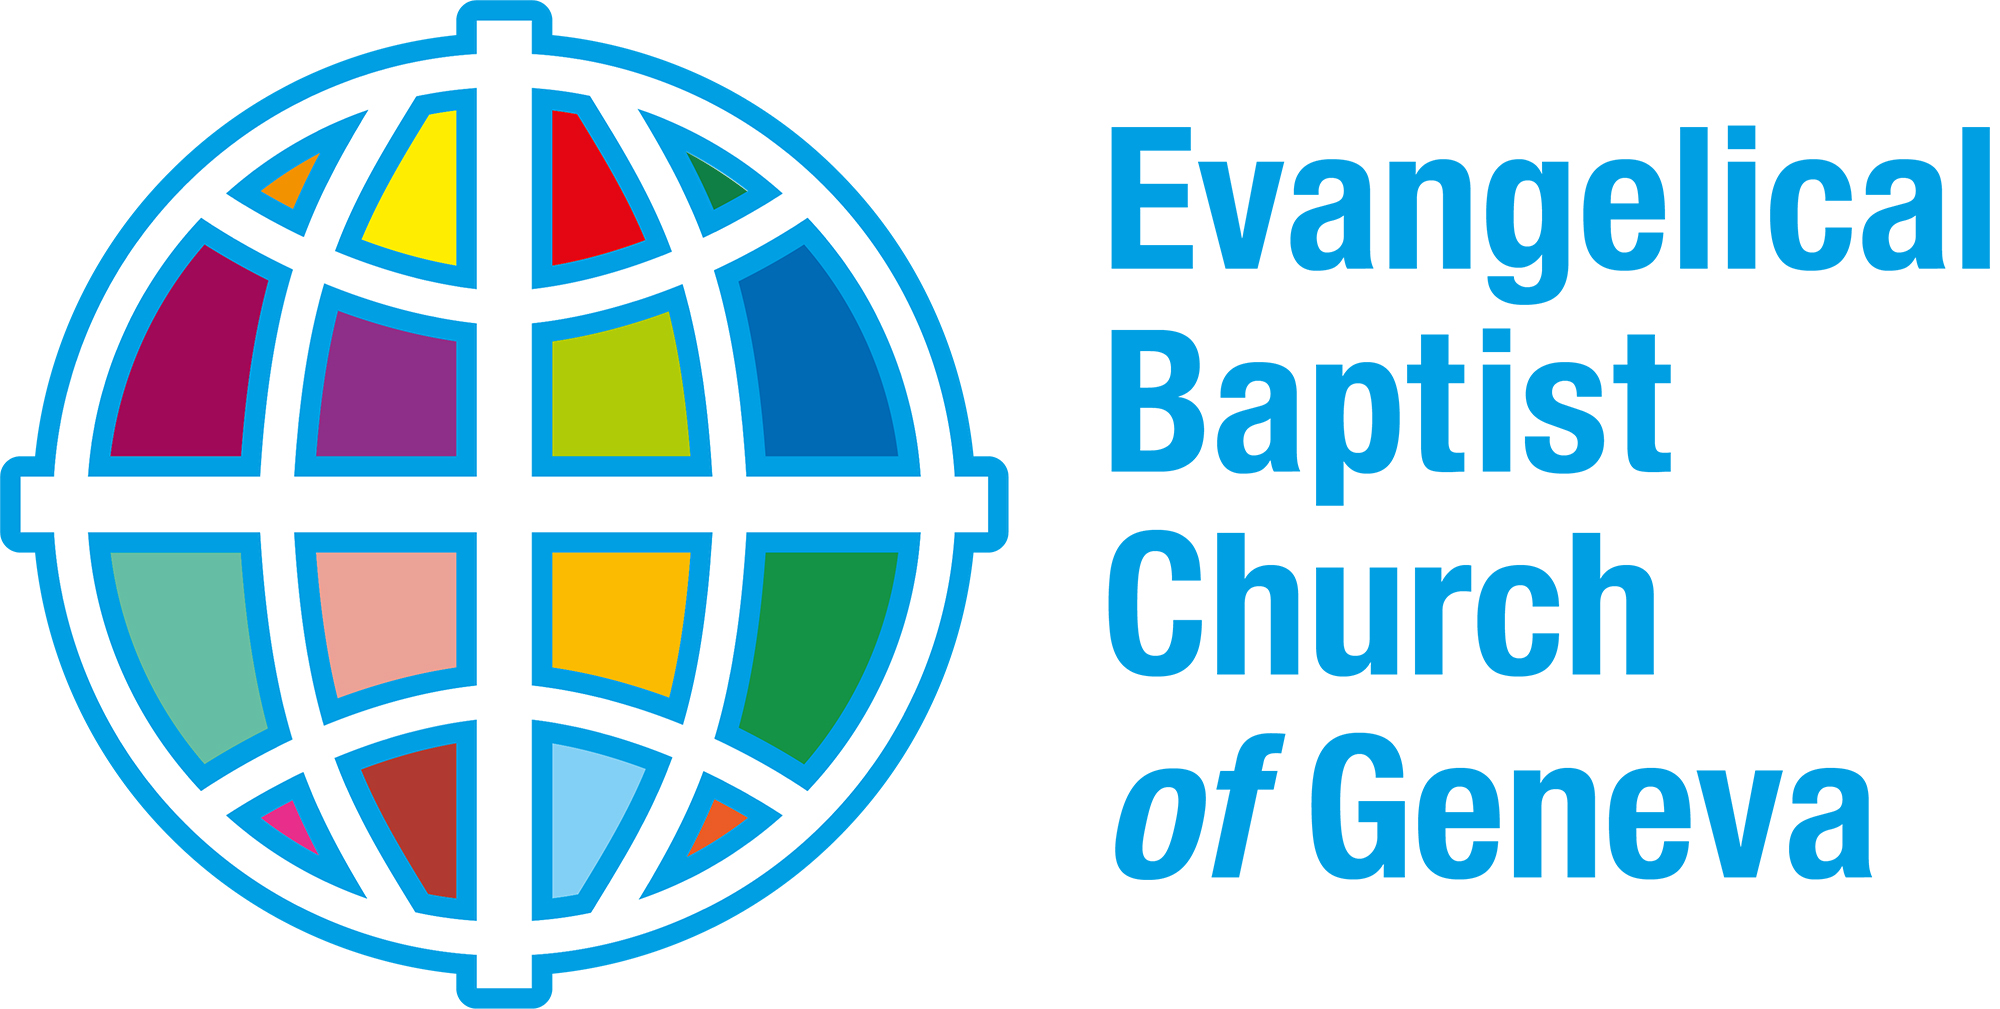 Evangelical Baptist Church of Geneva logo